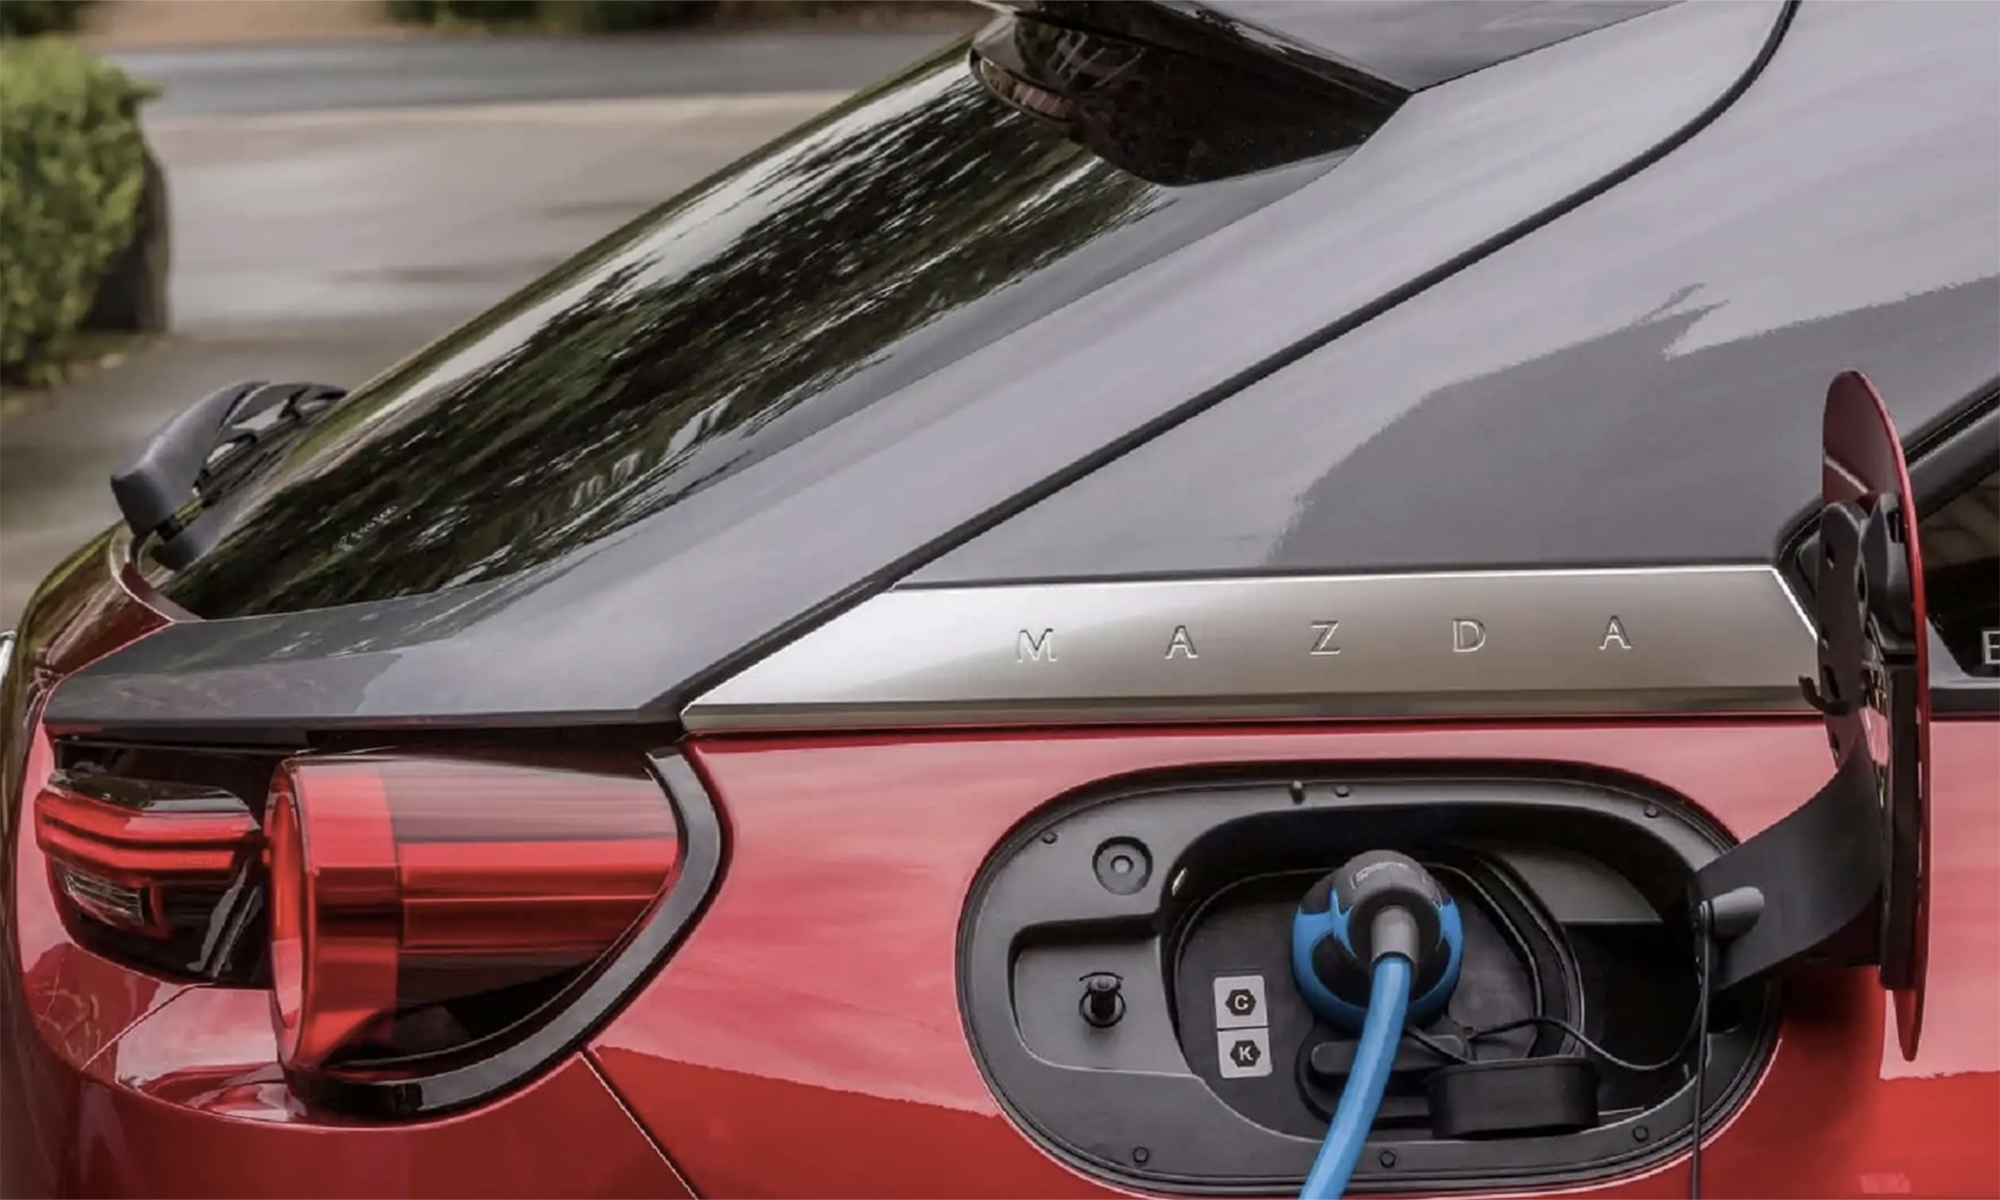 Mazda llevará a cabo una electrificación de su gama a partir del 2025.